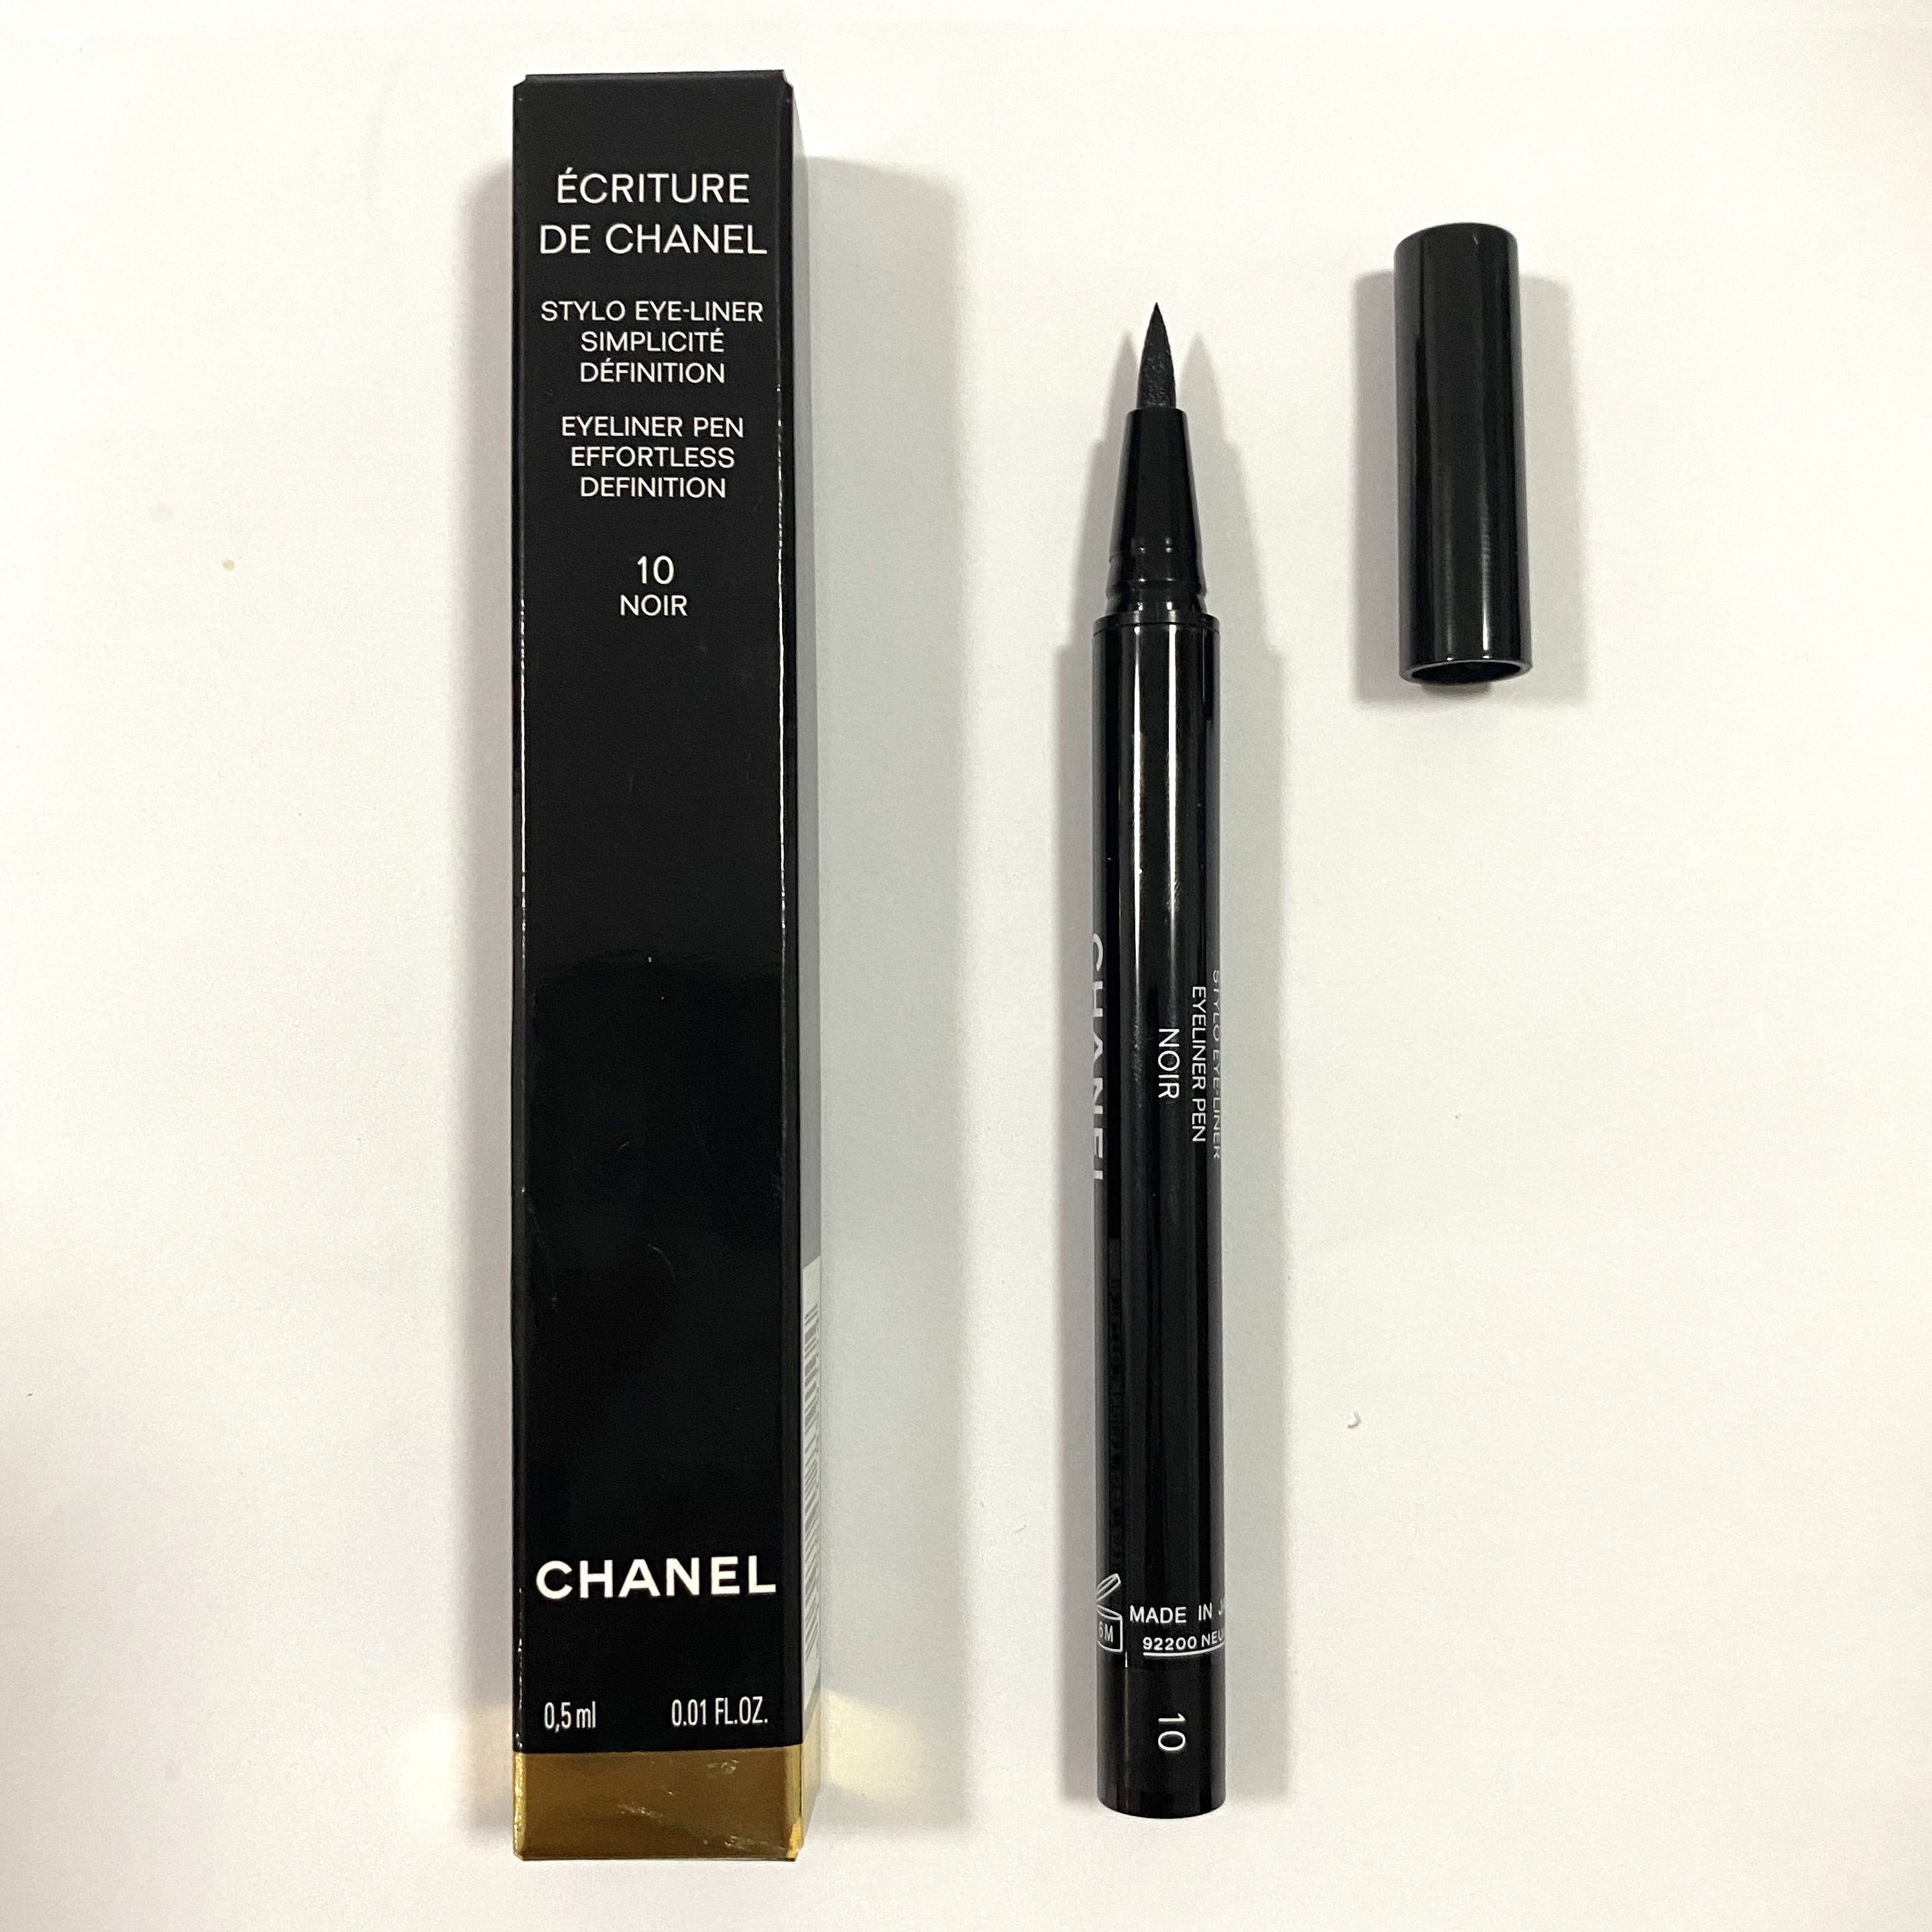 Chanel Ecriture De Chanel Eyeliner Pen 10 NOIR, Beauty & Personal